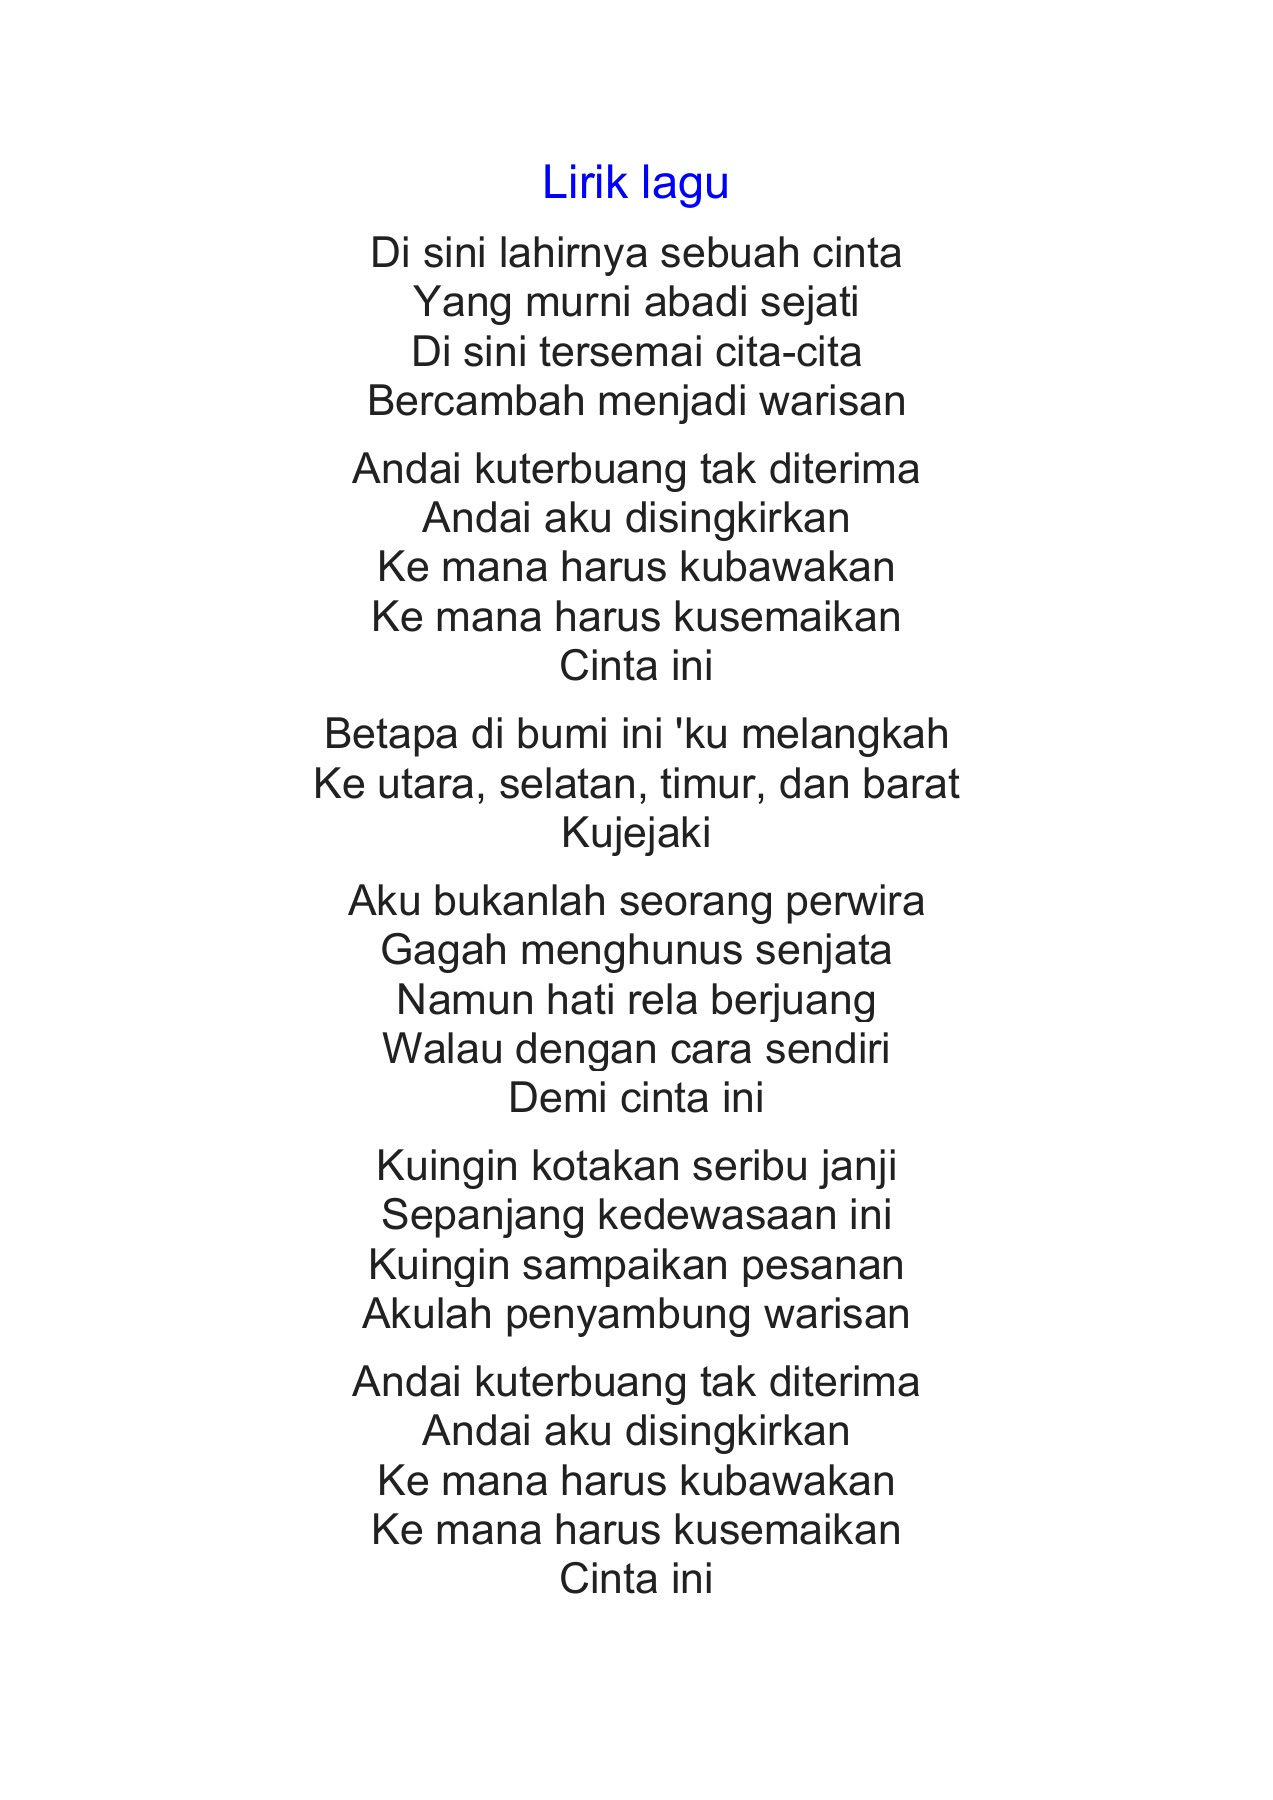 Lirik Lagu Keranamu Malaysia